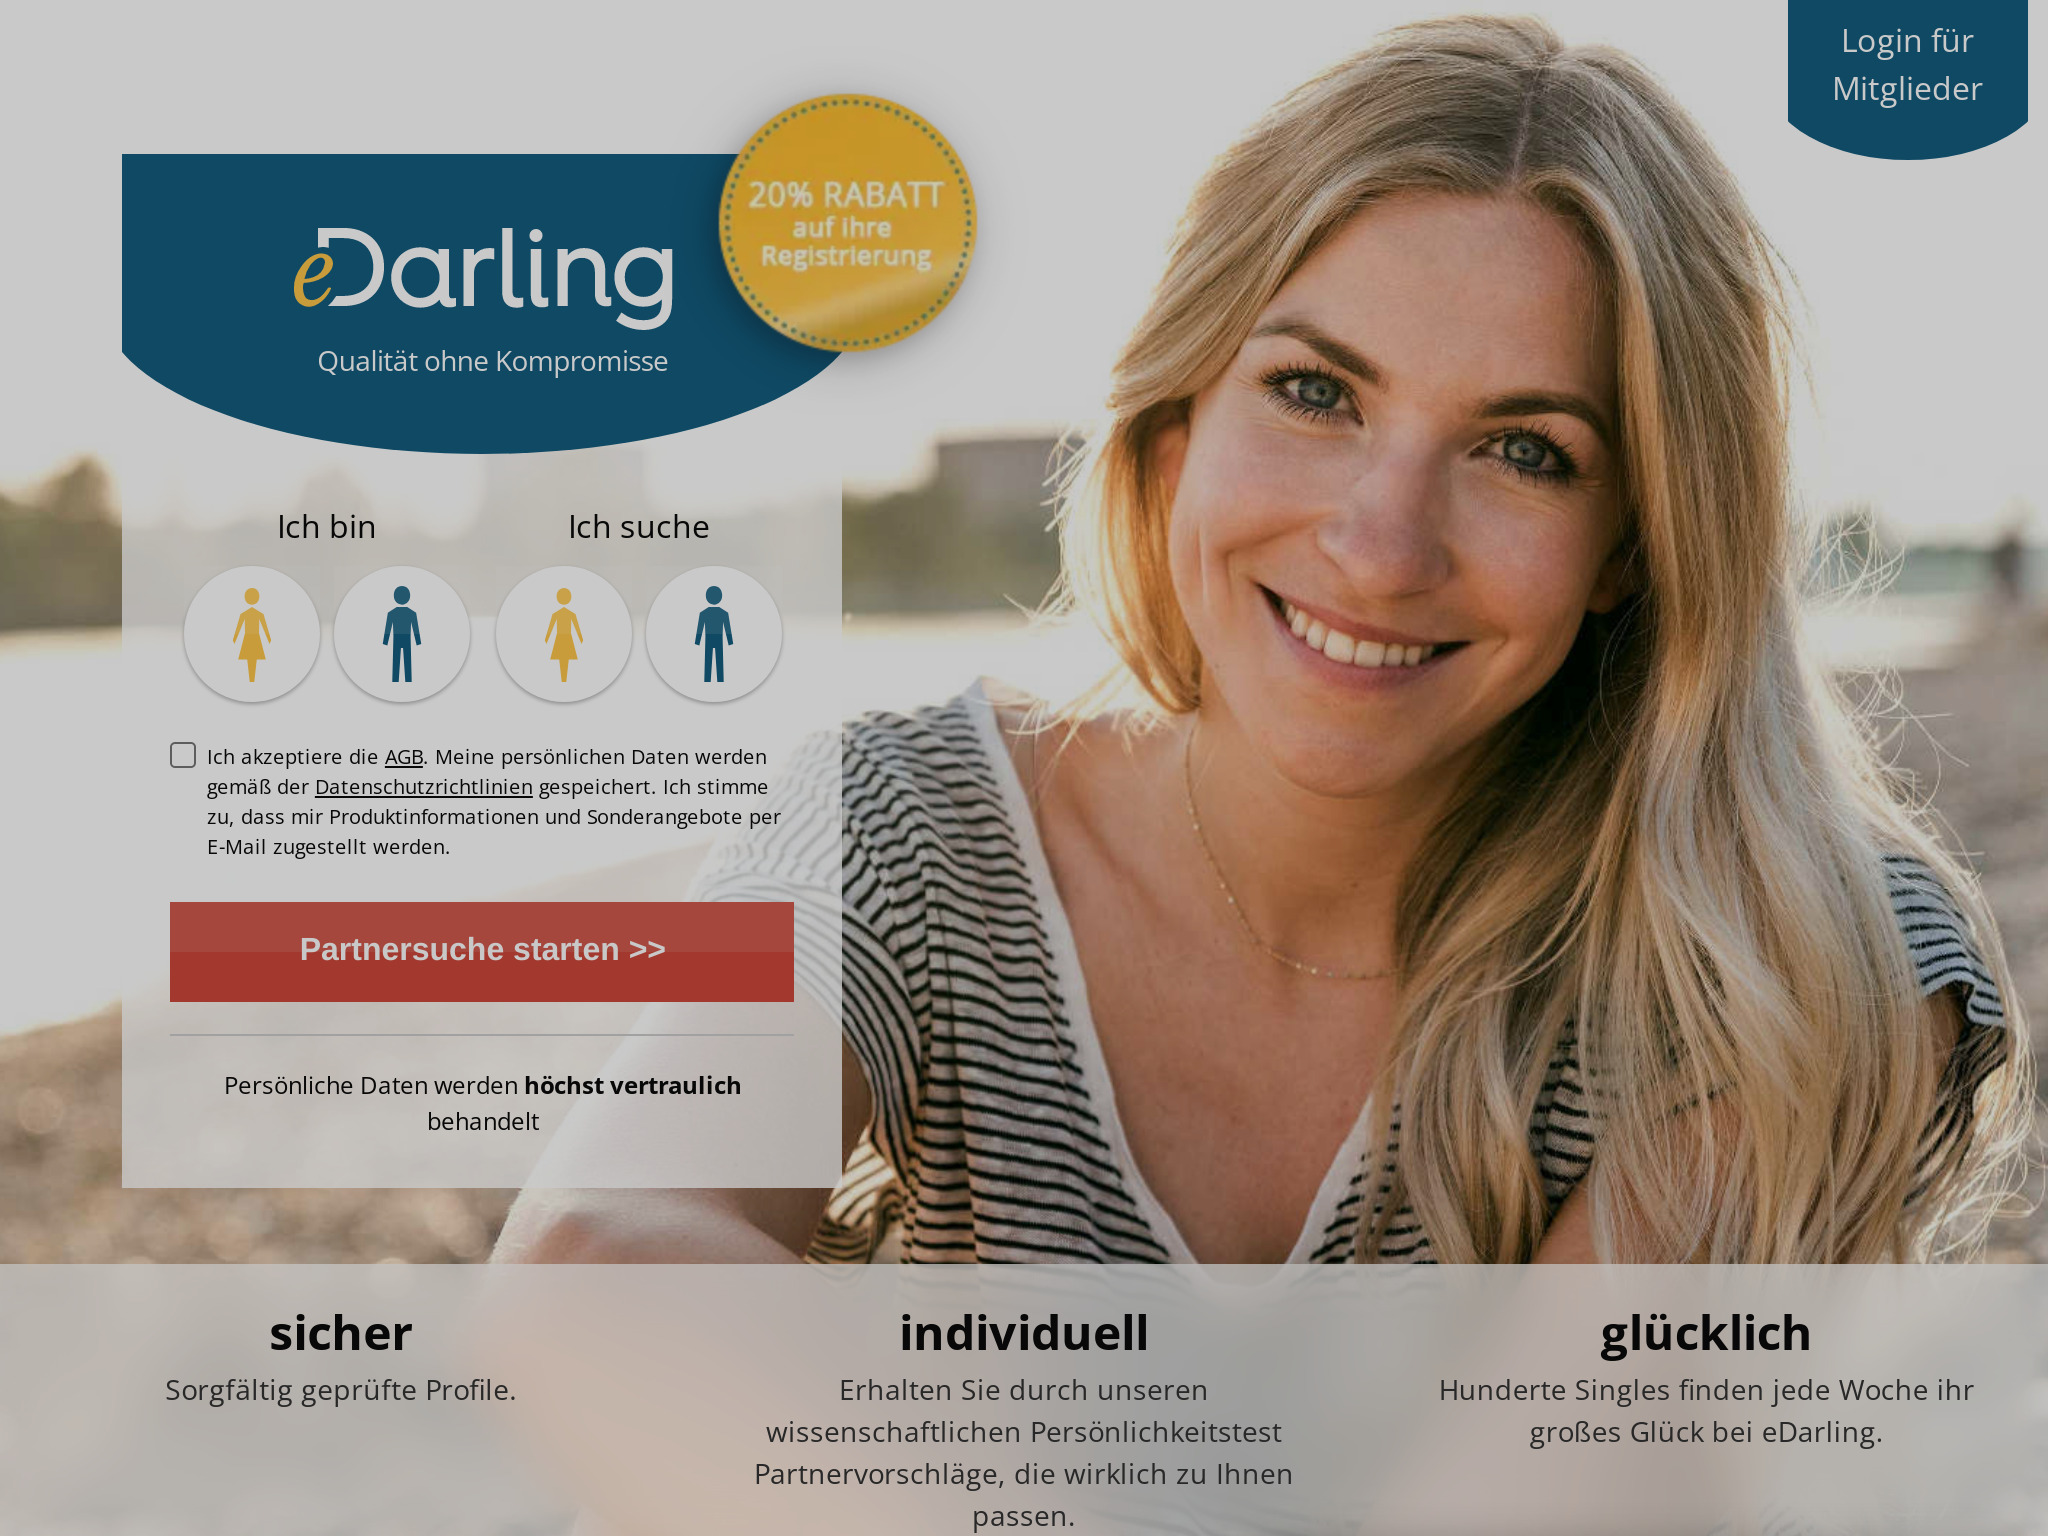 eDarling Review: een uitgebreide kijk op de datingsite